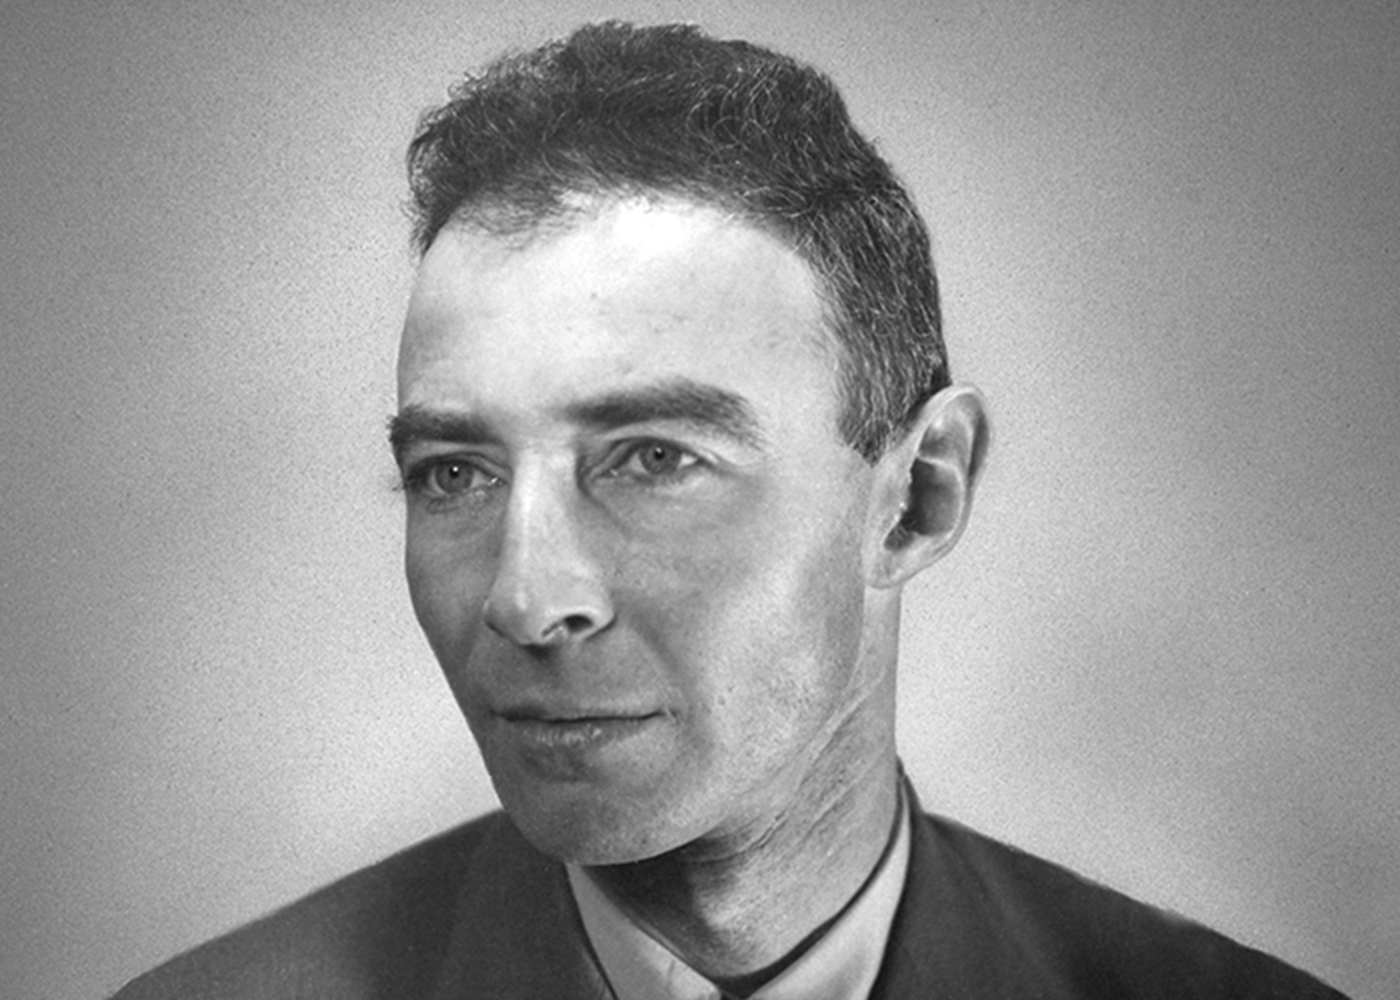 Oppenheimer movie